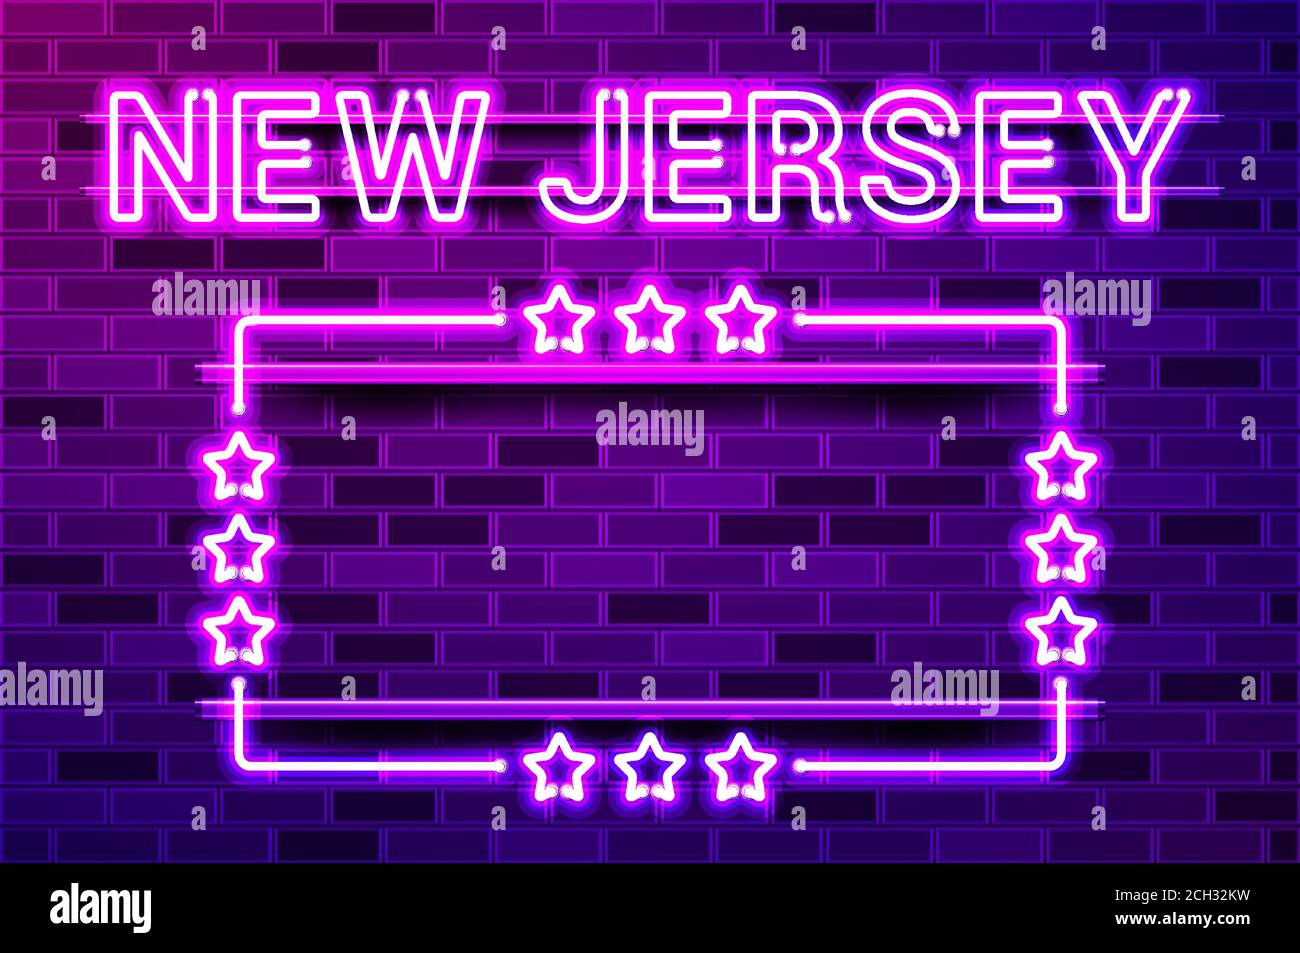 New Jersey US State lettrage violet fluo lumineux et un cadre rectangulaire avec des étoiles. Illustration vectorielle réaliste. Mur de briques violets, violet phosphorescent, m Illustration de Vecteur